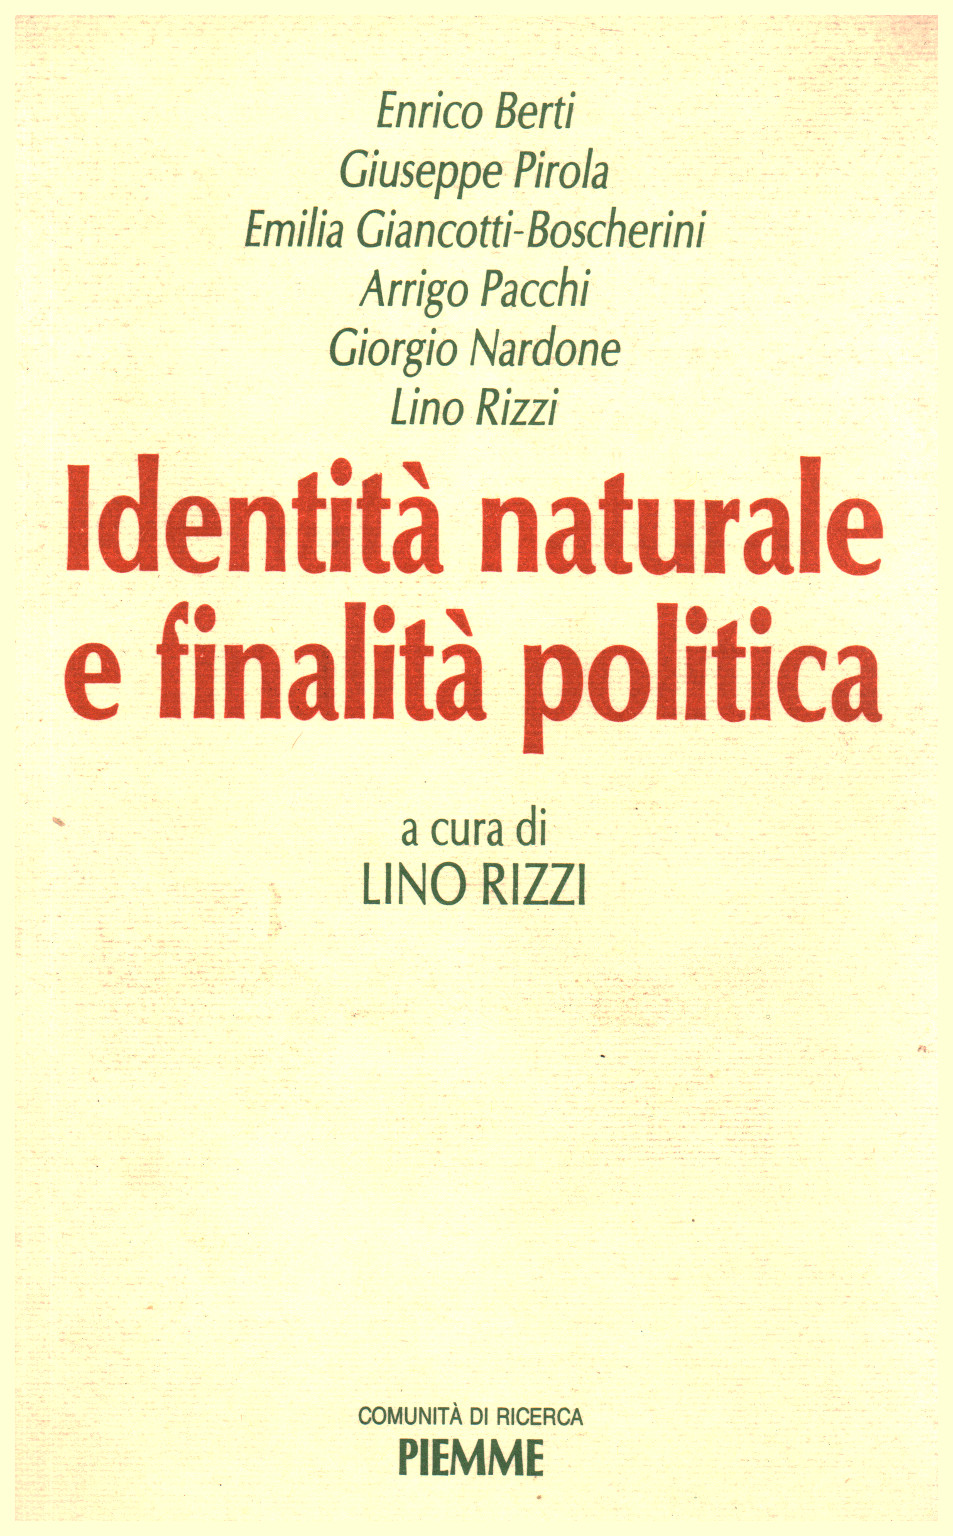 Identità naturale e finalità politica, Lino Rizzi